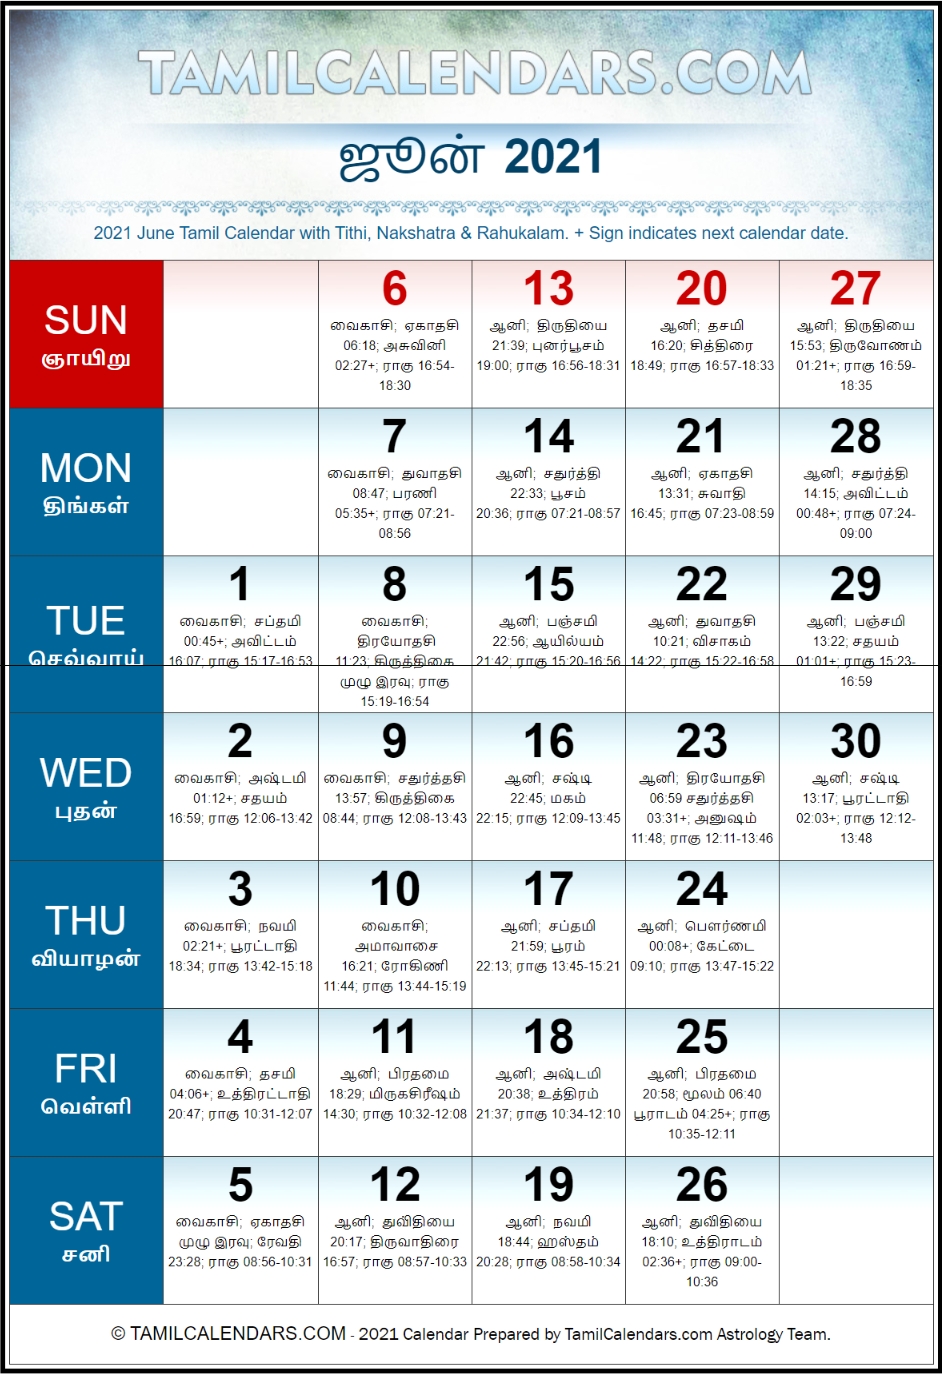 June 2021 Tamil Calendar | Plava Varusham Panchangam | Download Printable Pdf Calendars In Tamil June 2021 Daily Calendar